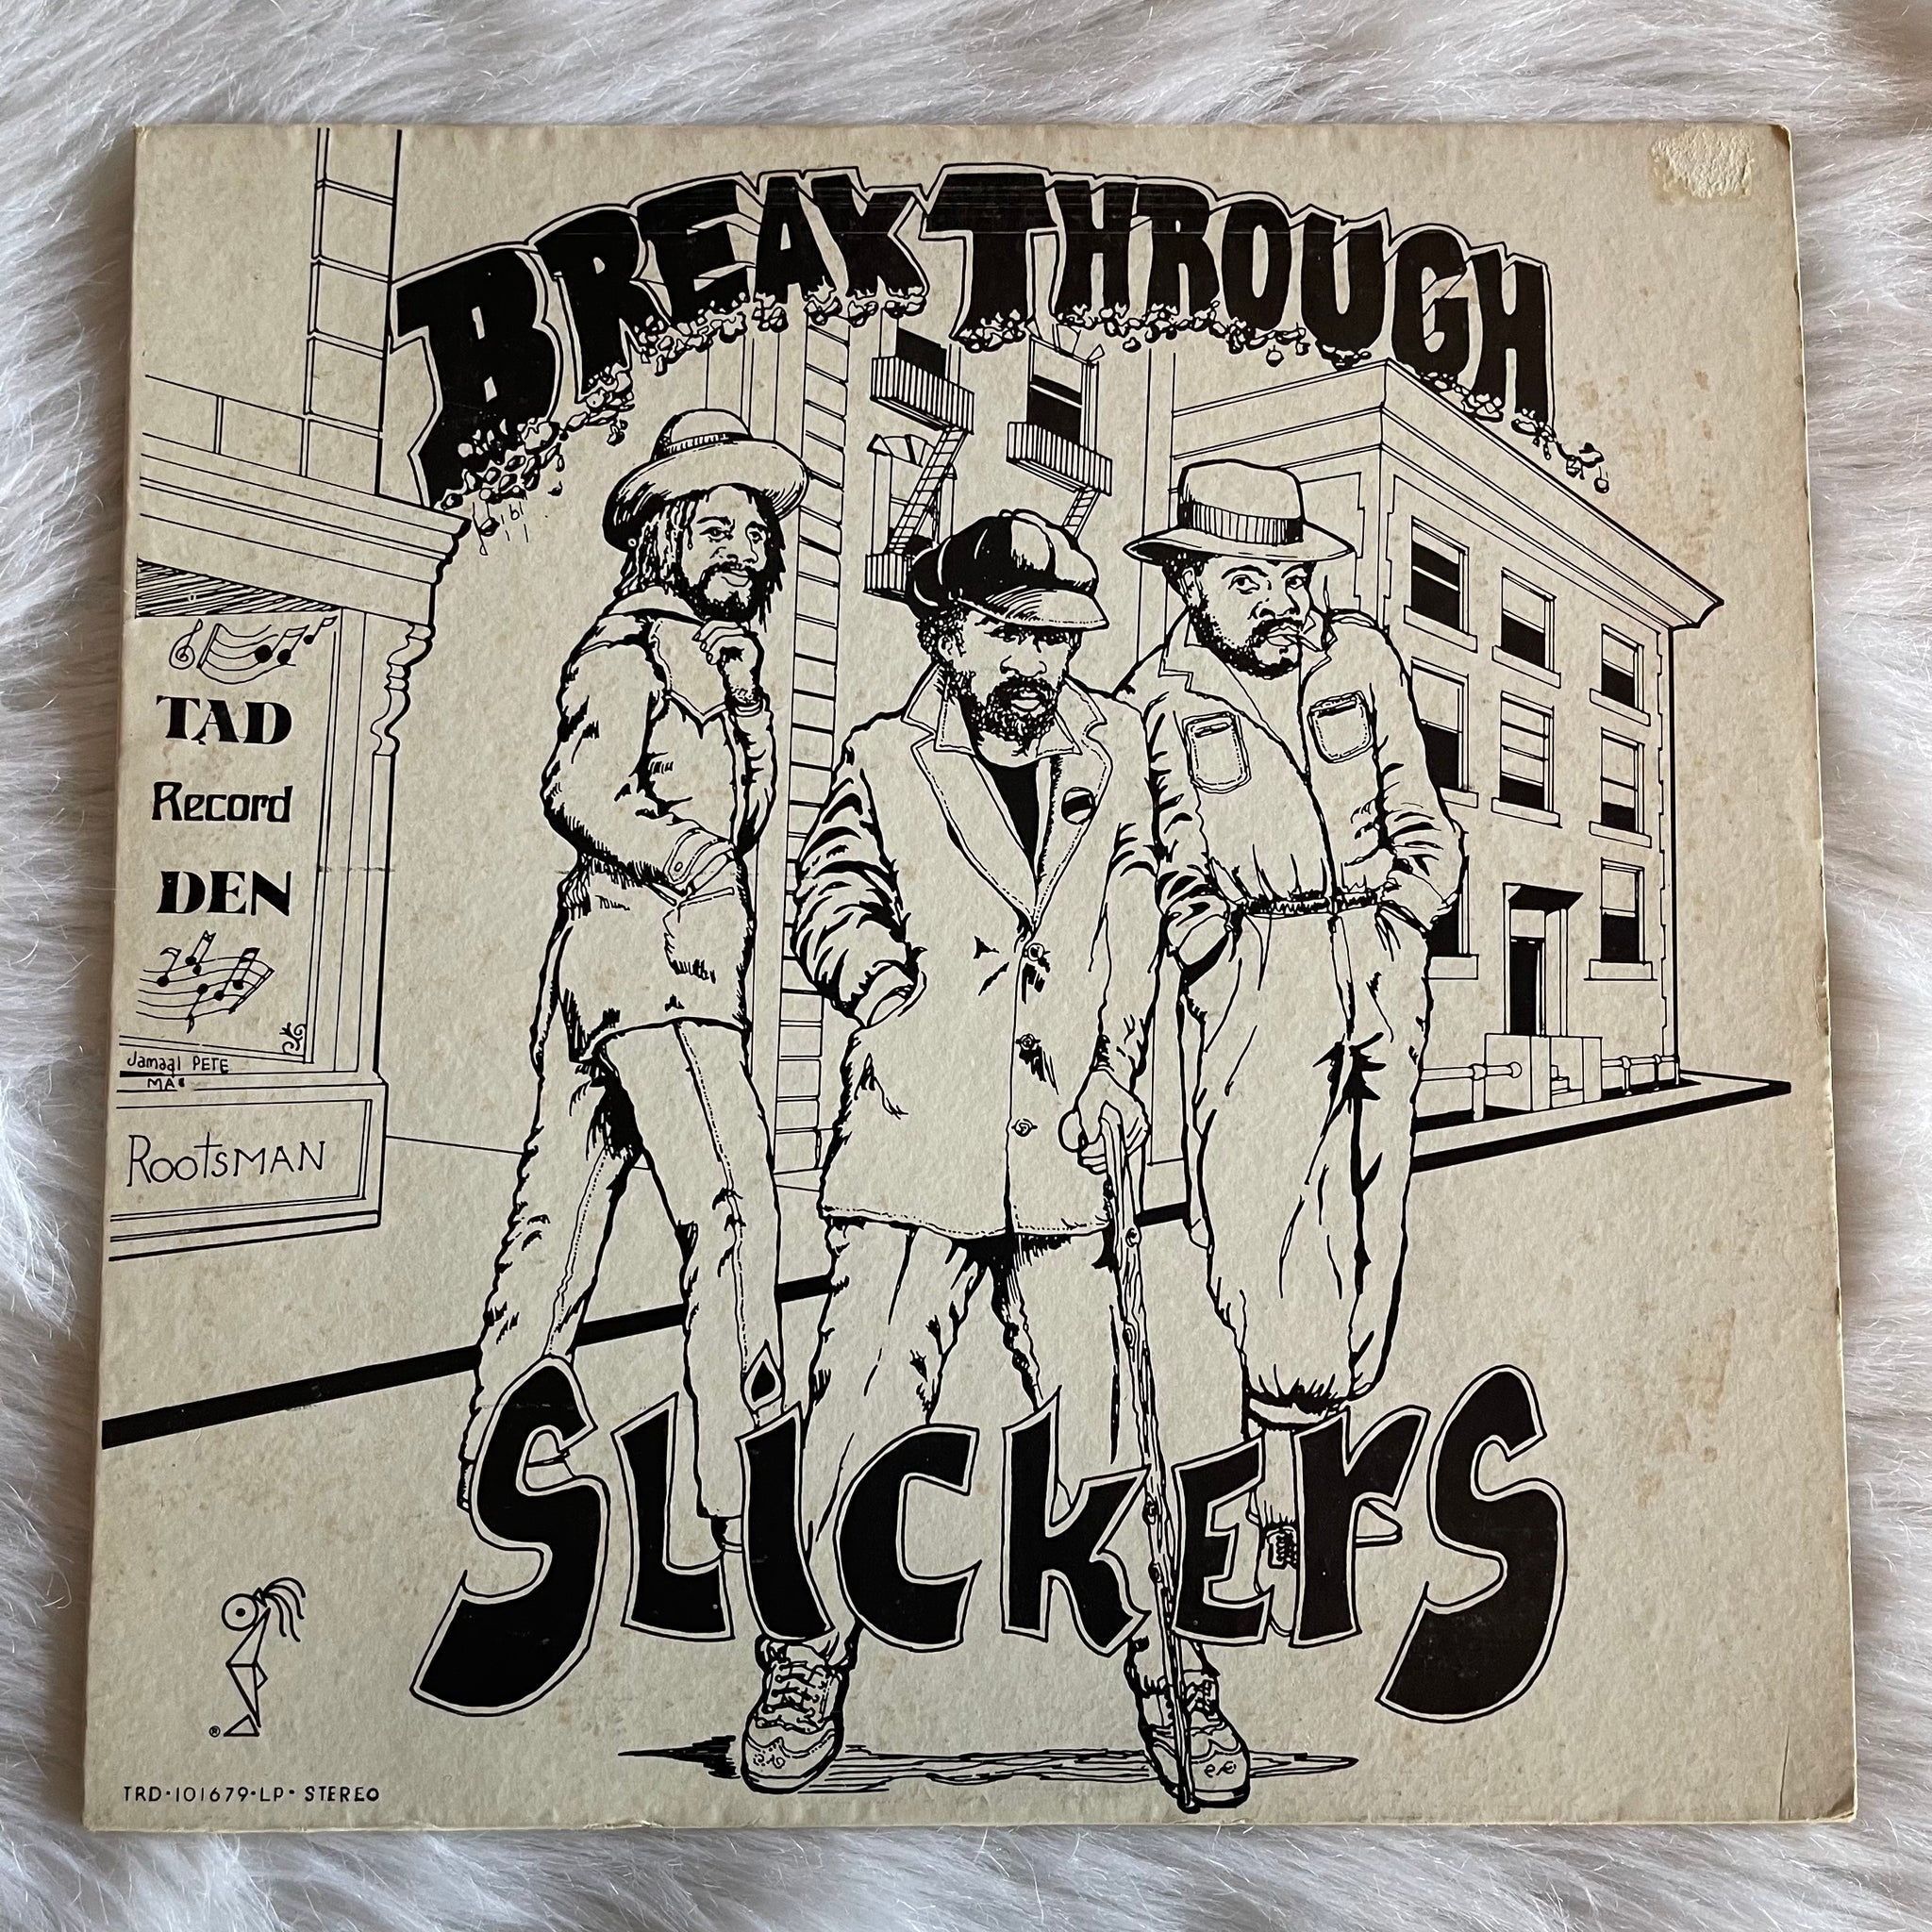 Slickers-Breakthrough